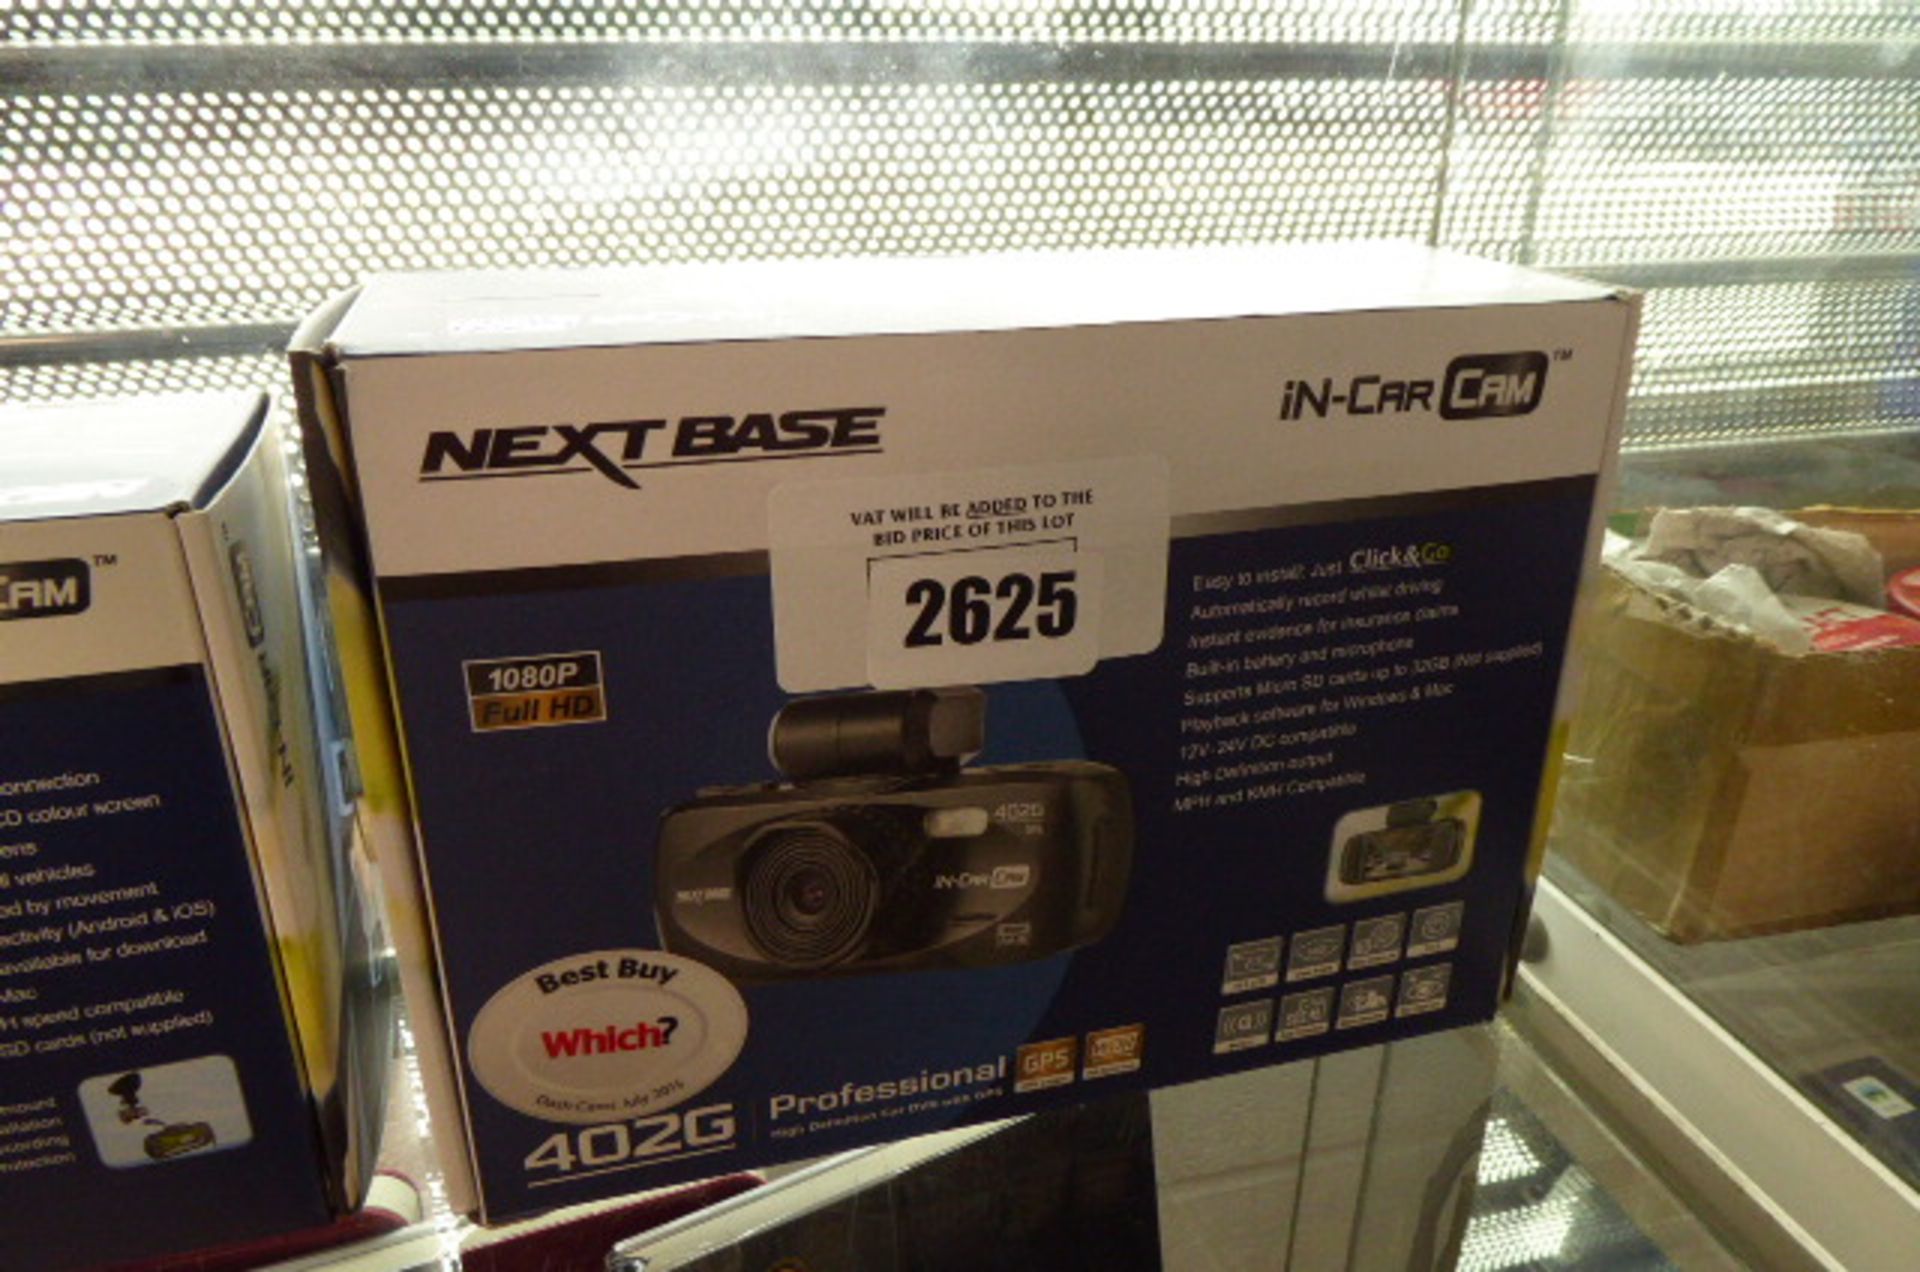 Next Base in car dash cam model 402G in box (af)